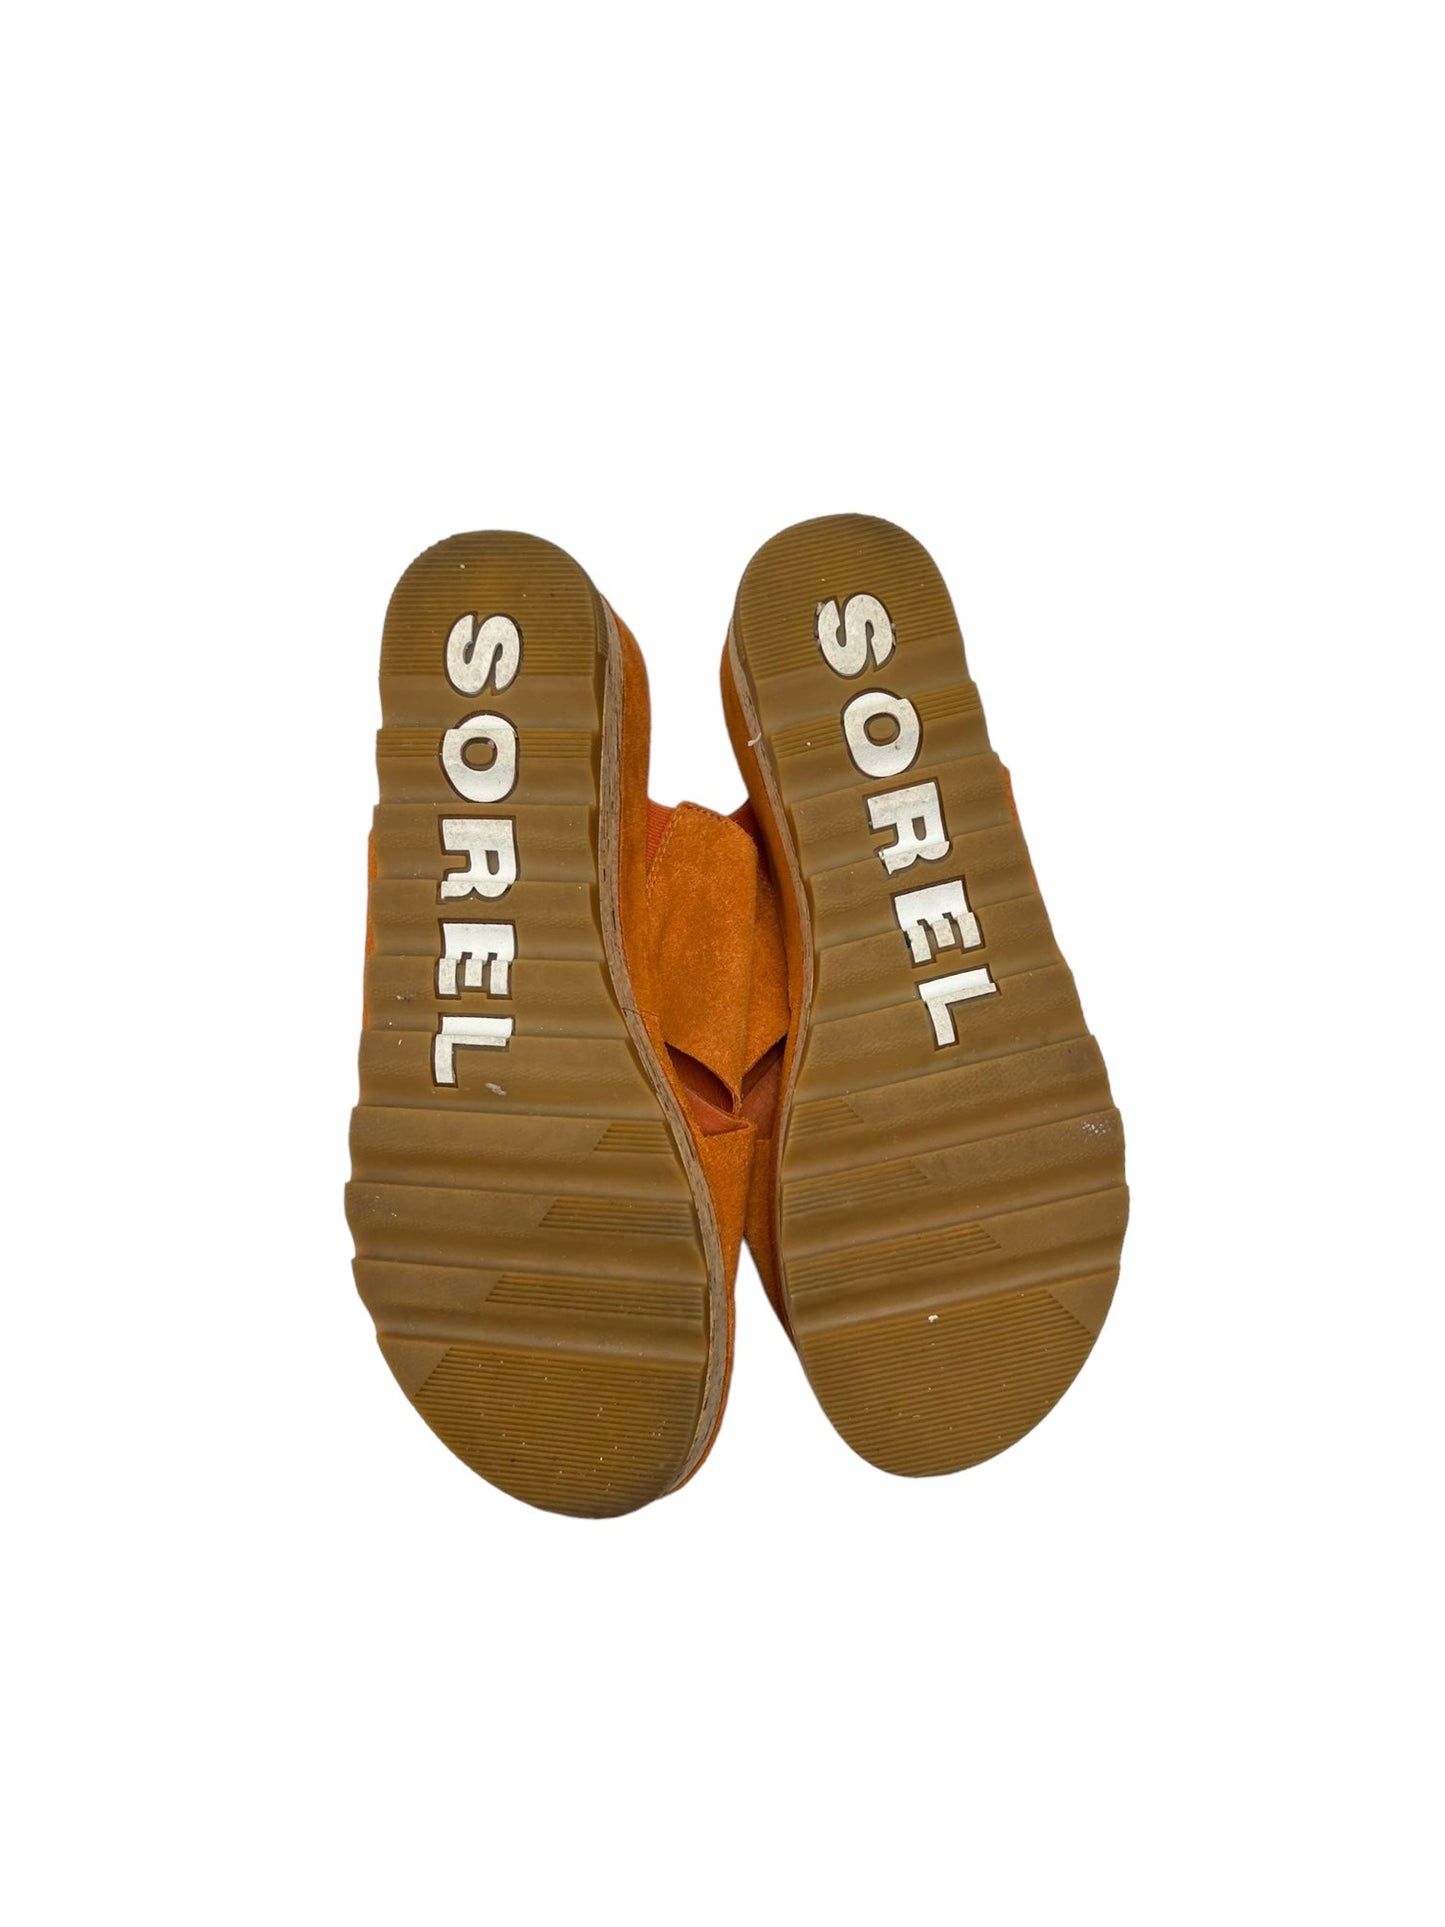 Yellow Sandals Heels Platform Sorel, Size 9